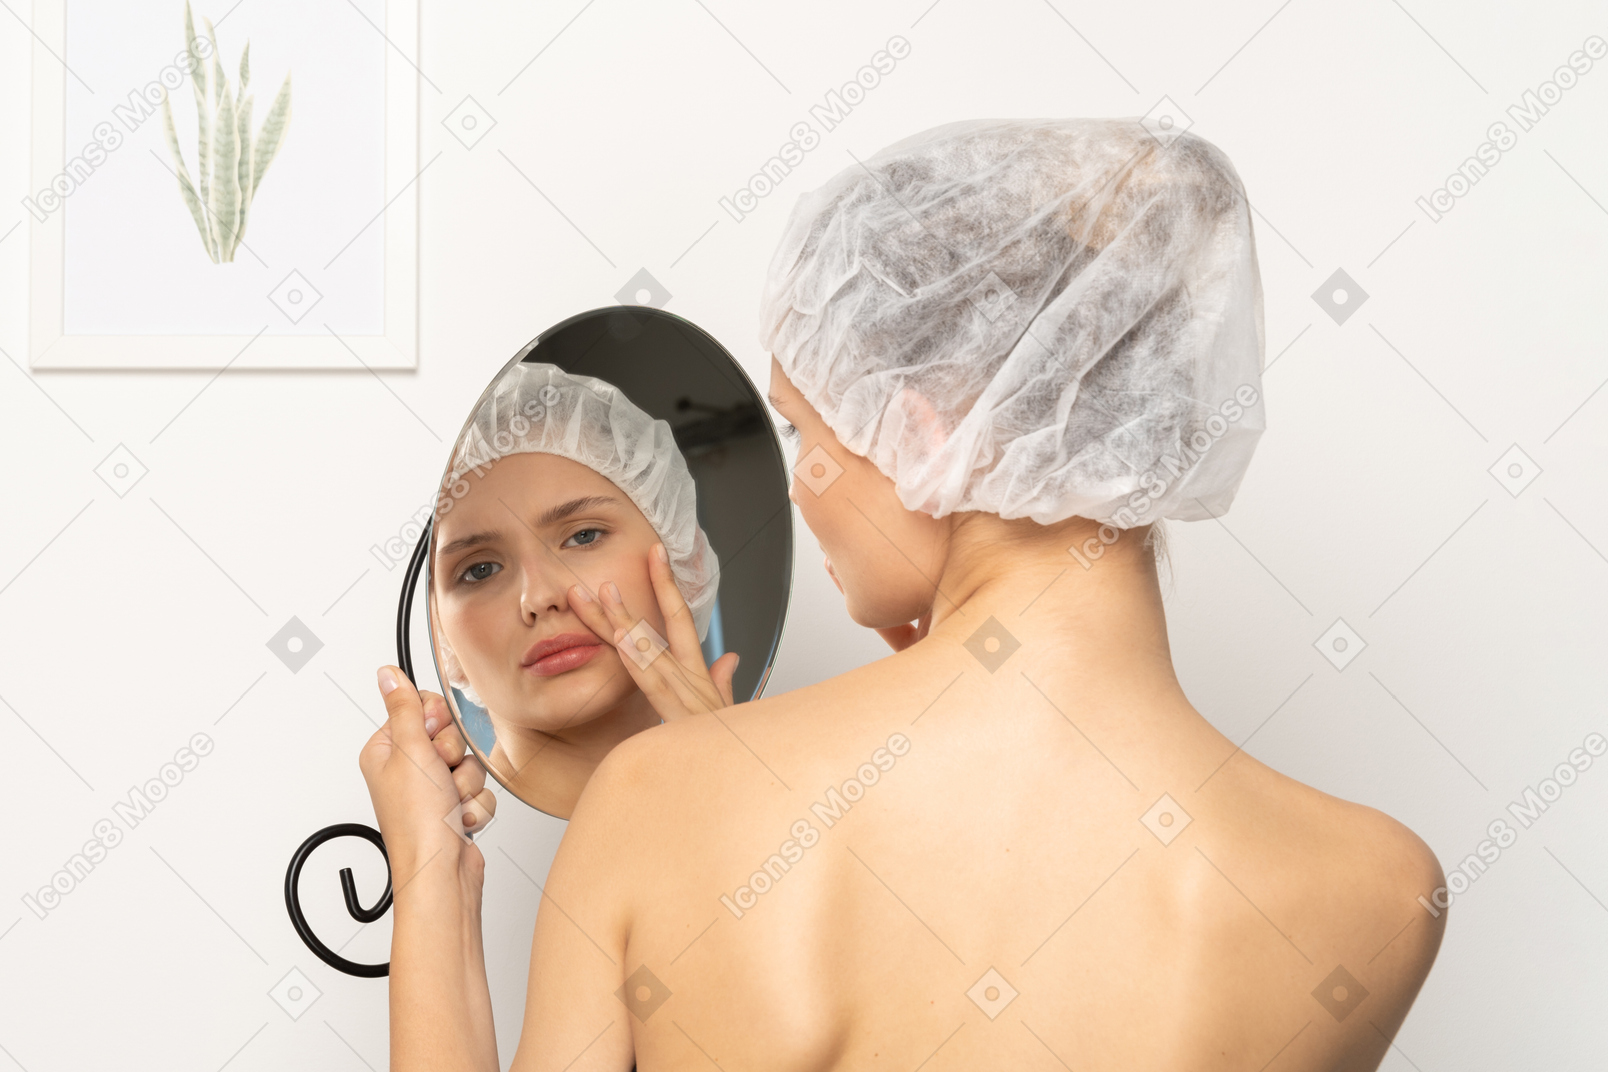 거울에 비친 자신을 바라보는 수술 모자를 쓴 젊은 여성